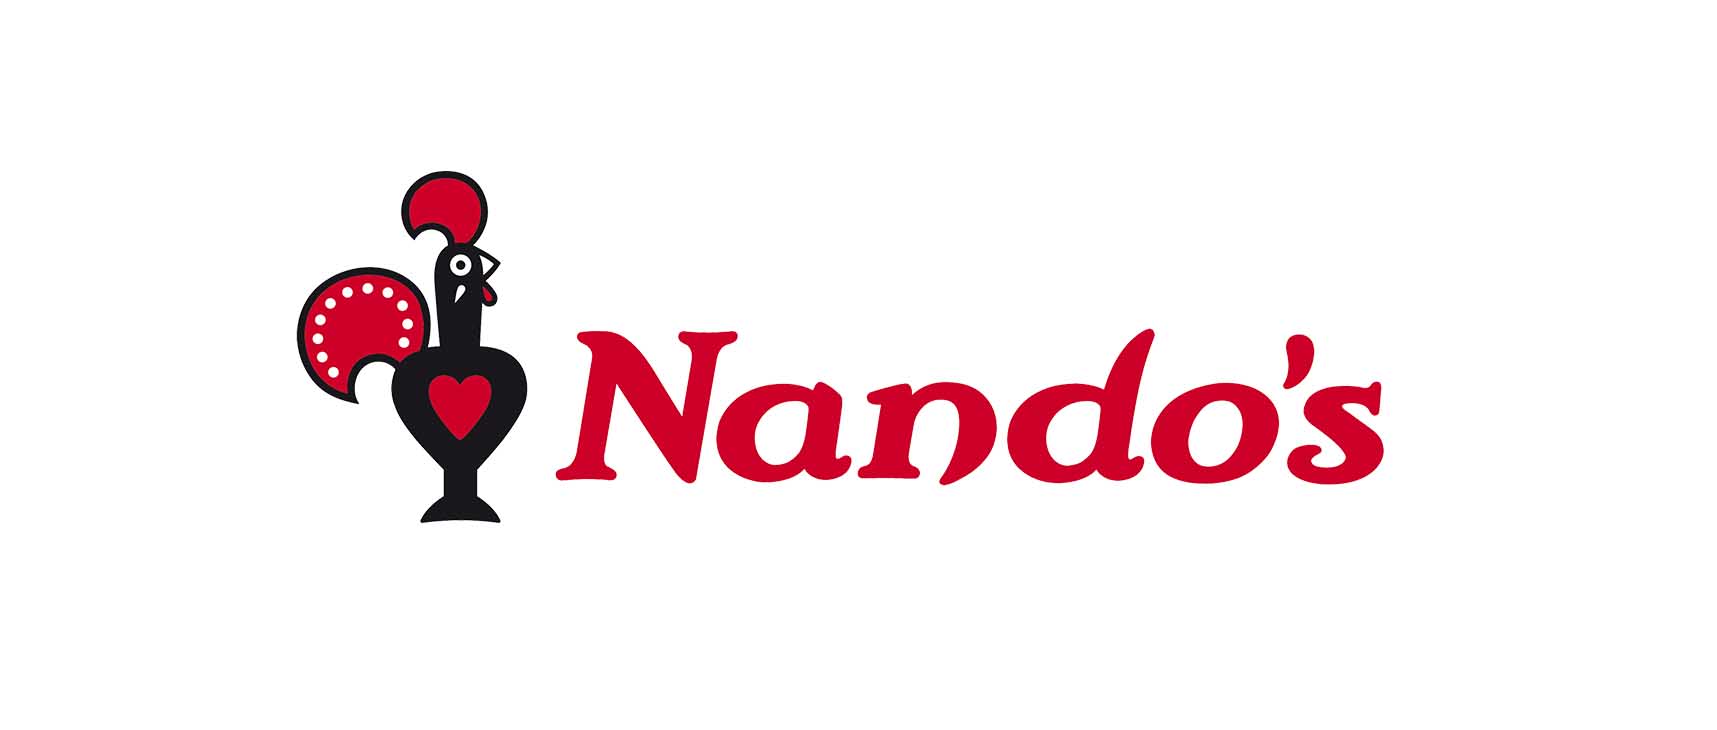 world_0000_Nandos_logo_PNG4